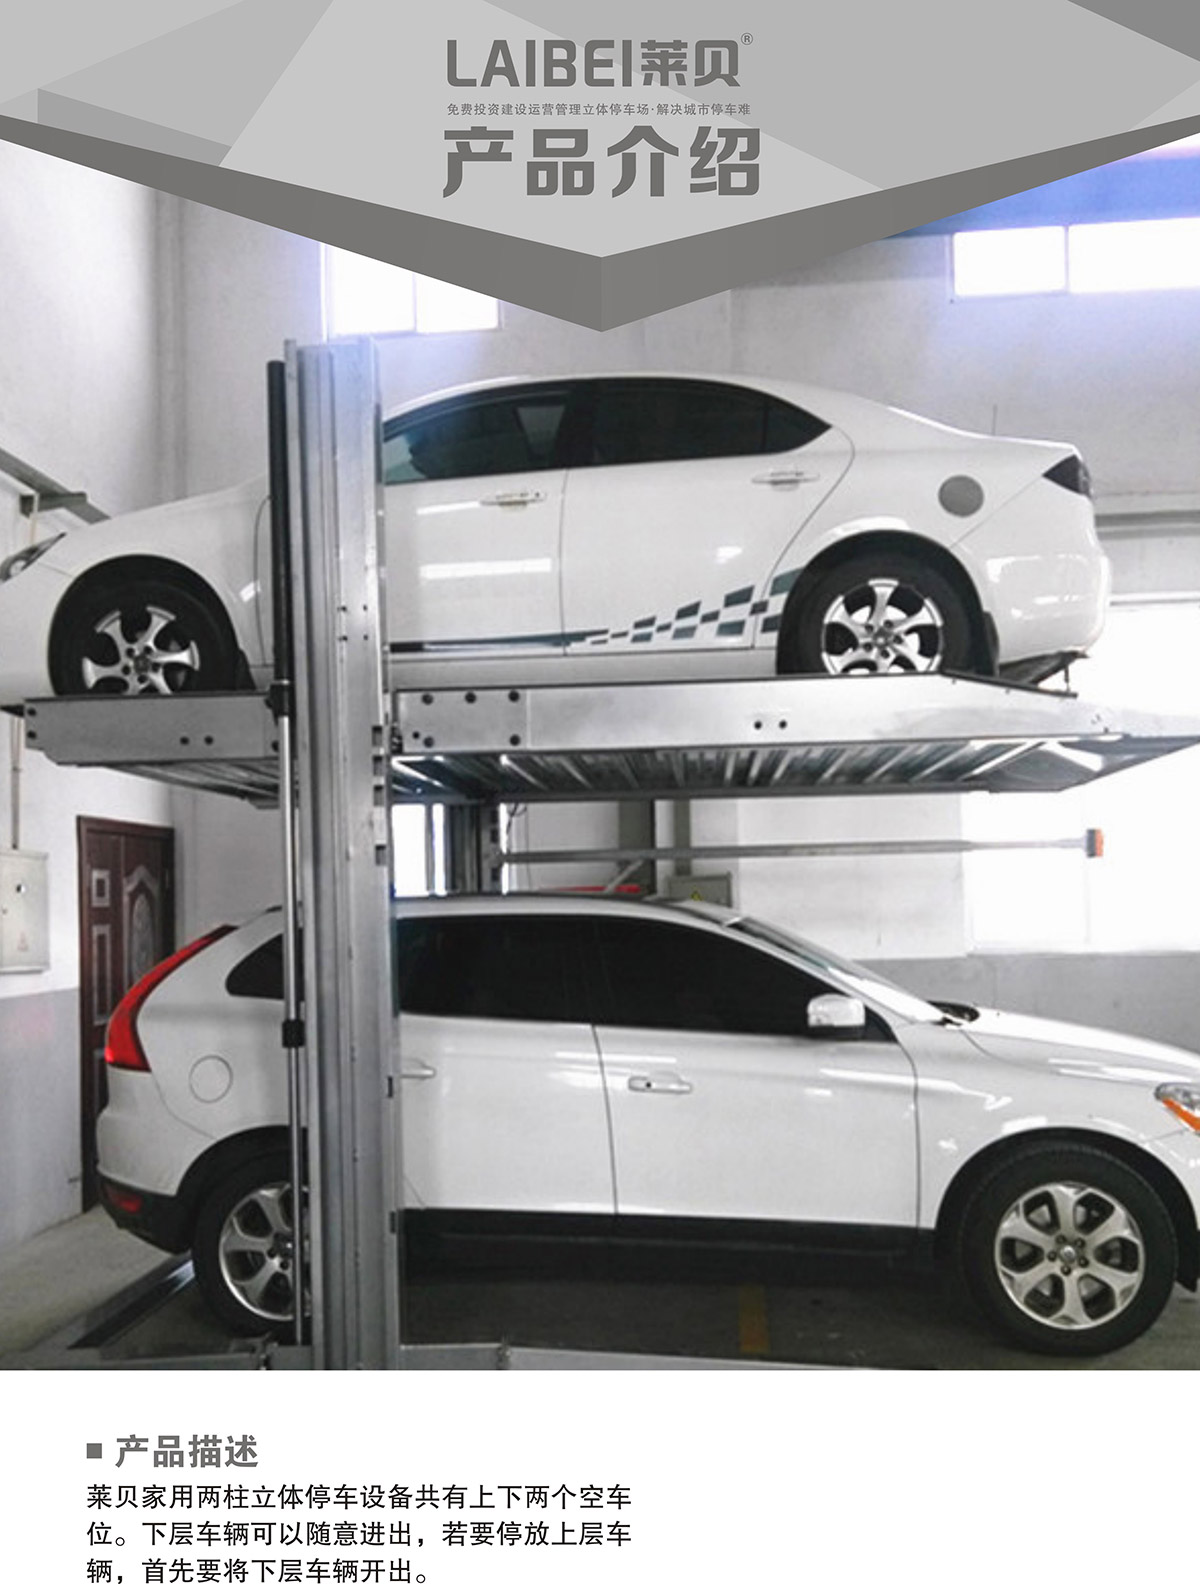 机械立体停车PJS两柱简易升降立体停车产品介绍.jpg